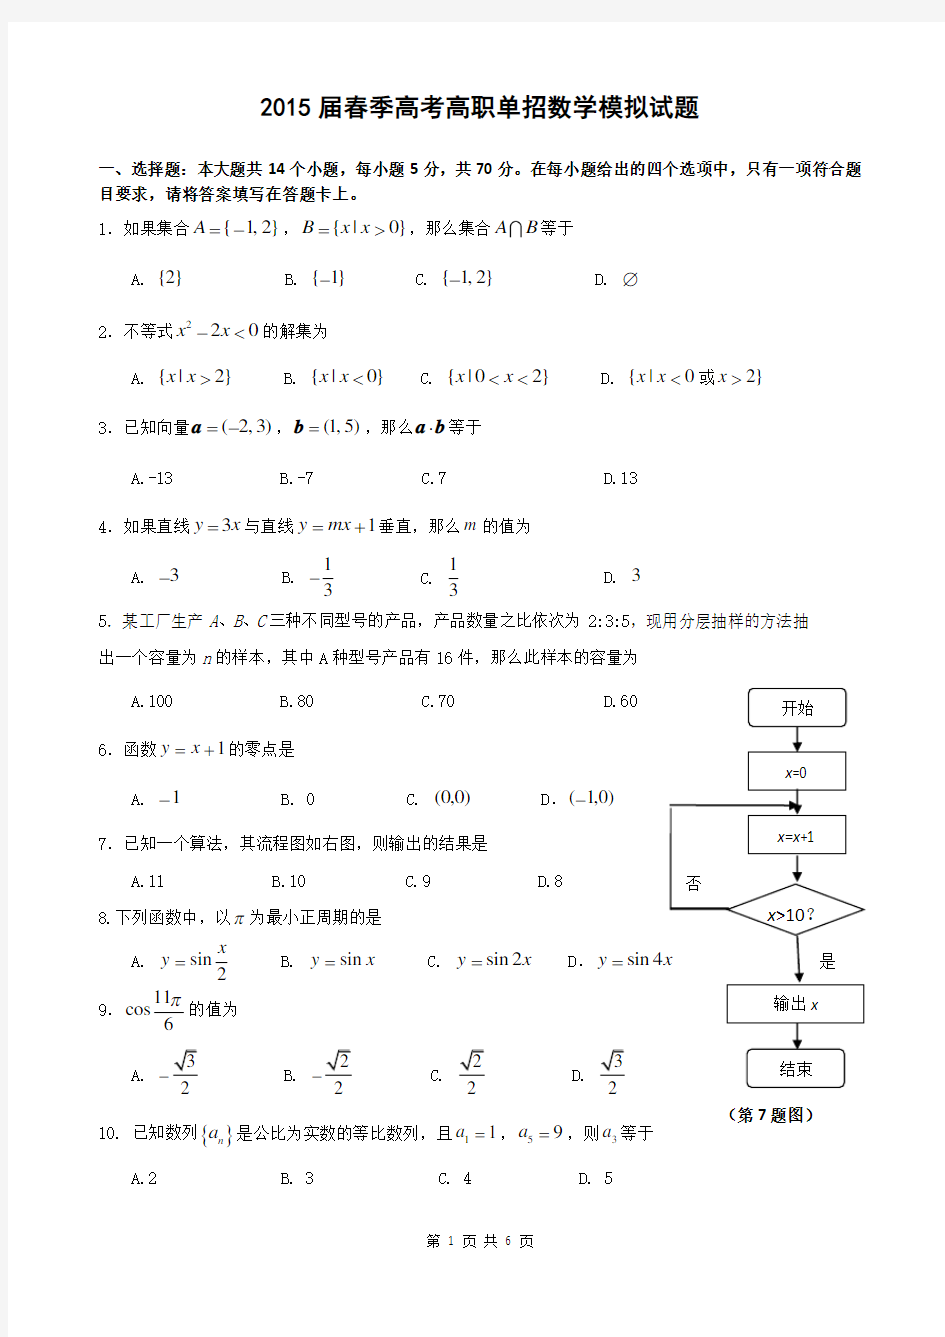 春季高考高职单招数学模拟试题 (1)